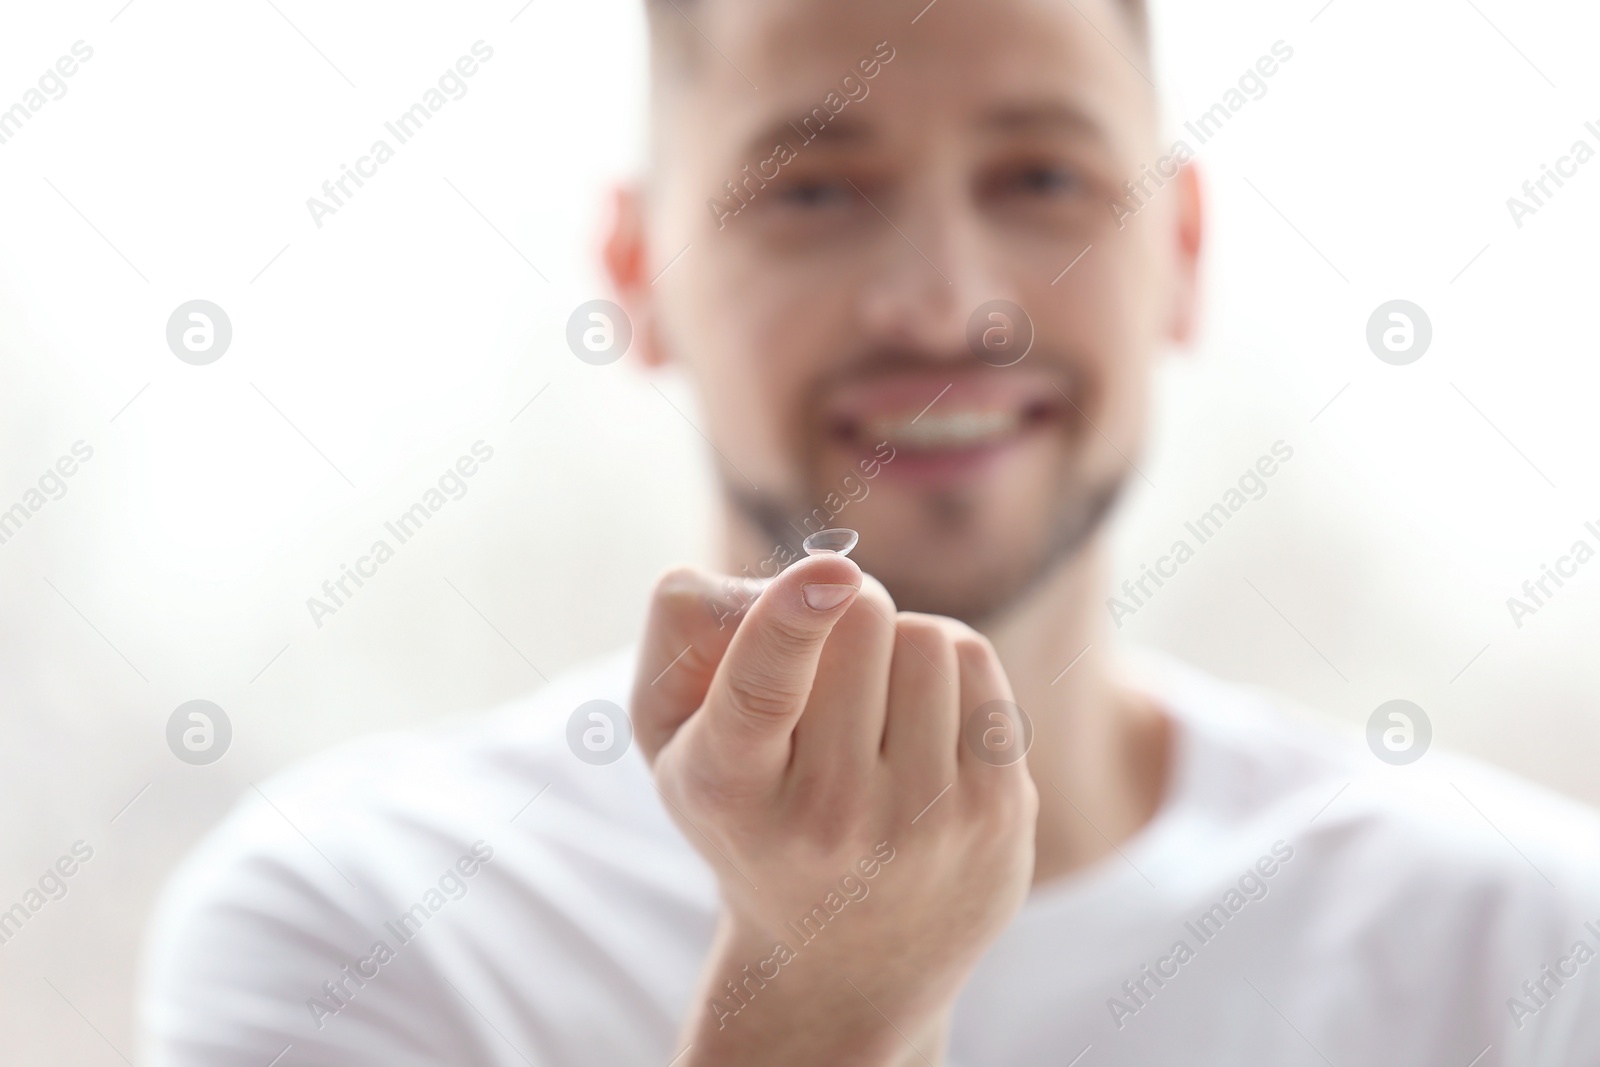 Photo of Man holding contact lens, closeup